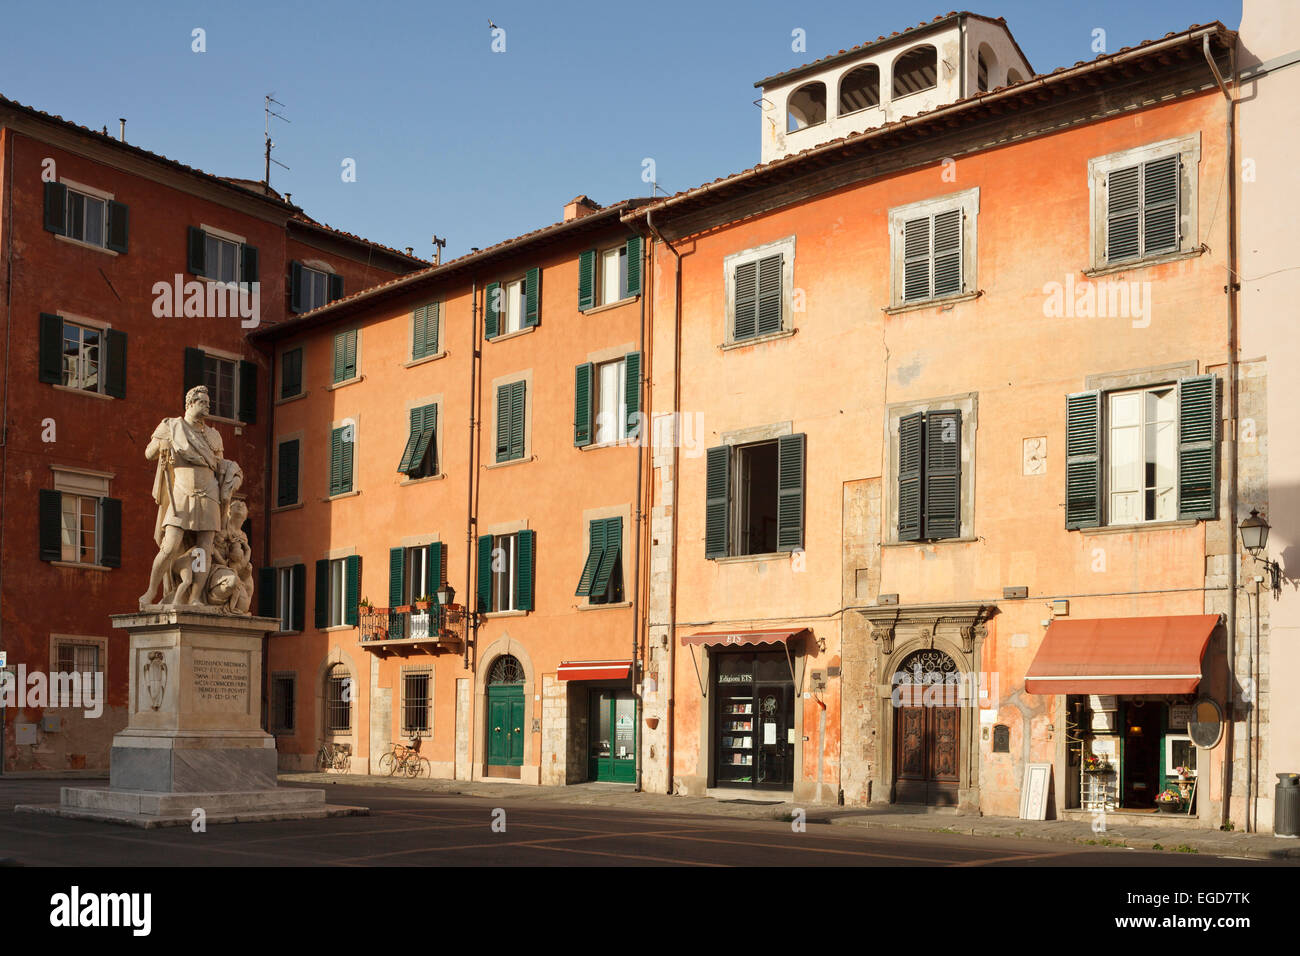 Piazza Francesco Carrara square, Pisa, Tuscany, Italy, Europe Stock Photo